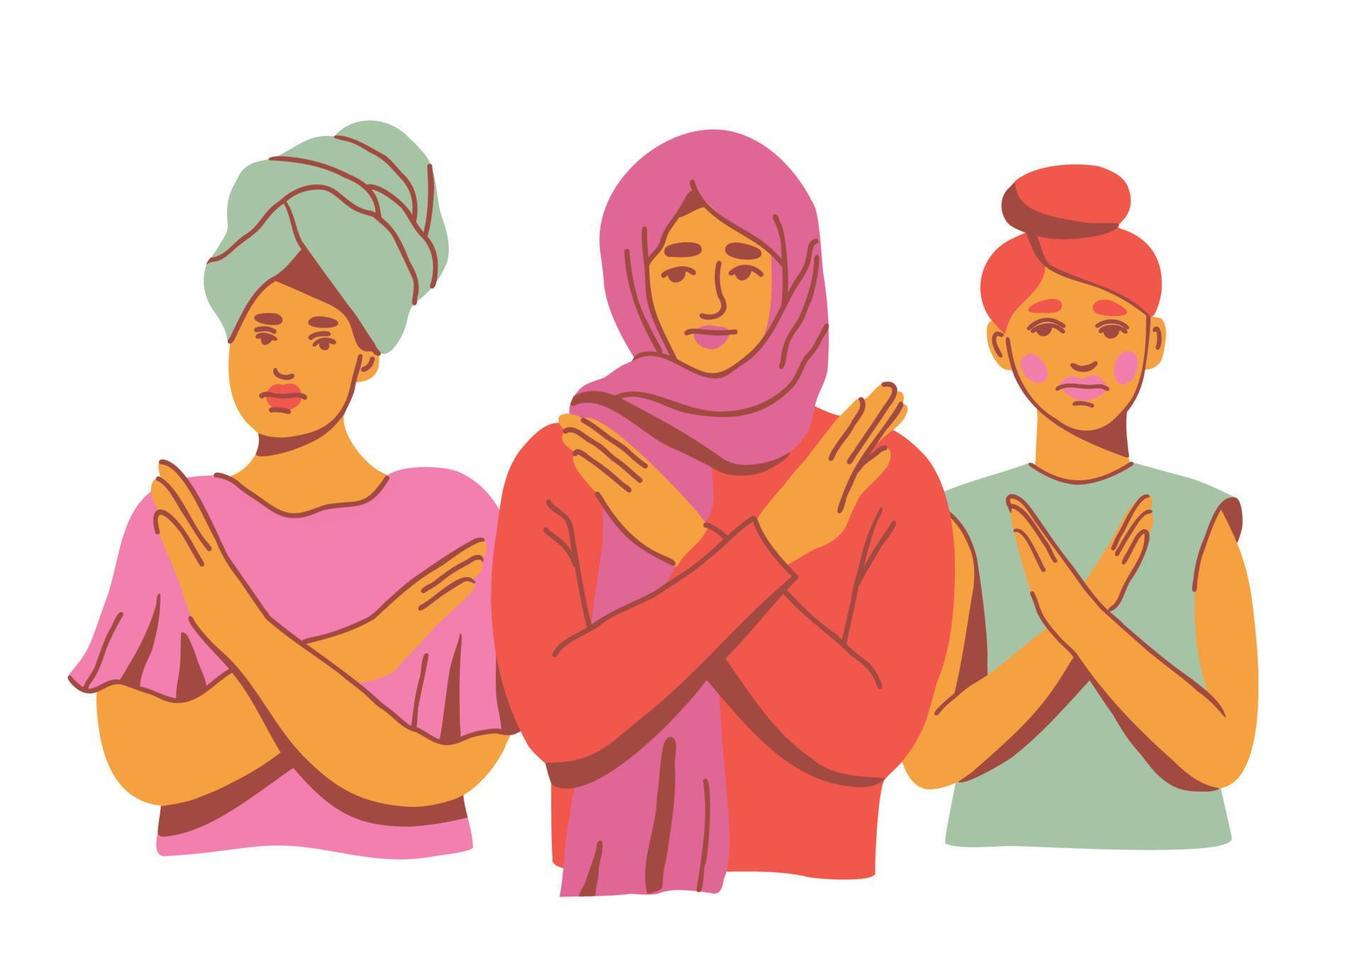 briser le biais. femmes de différentes ethnies protestant contre les inégalités. illustration vectorielle dessinés à la main vecteur